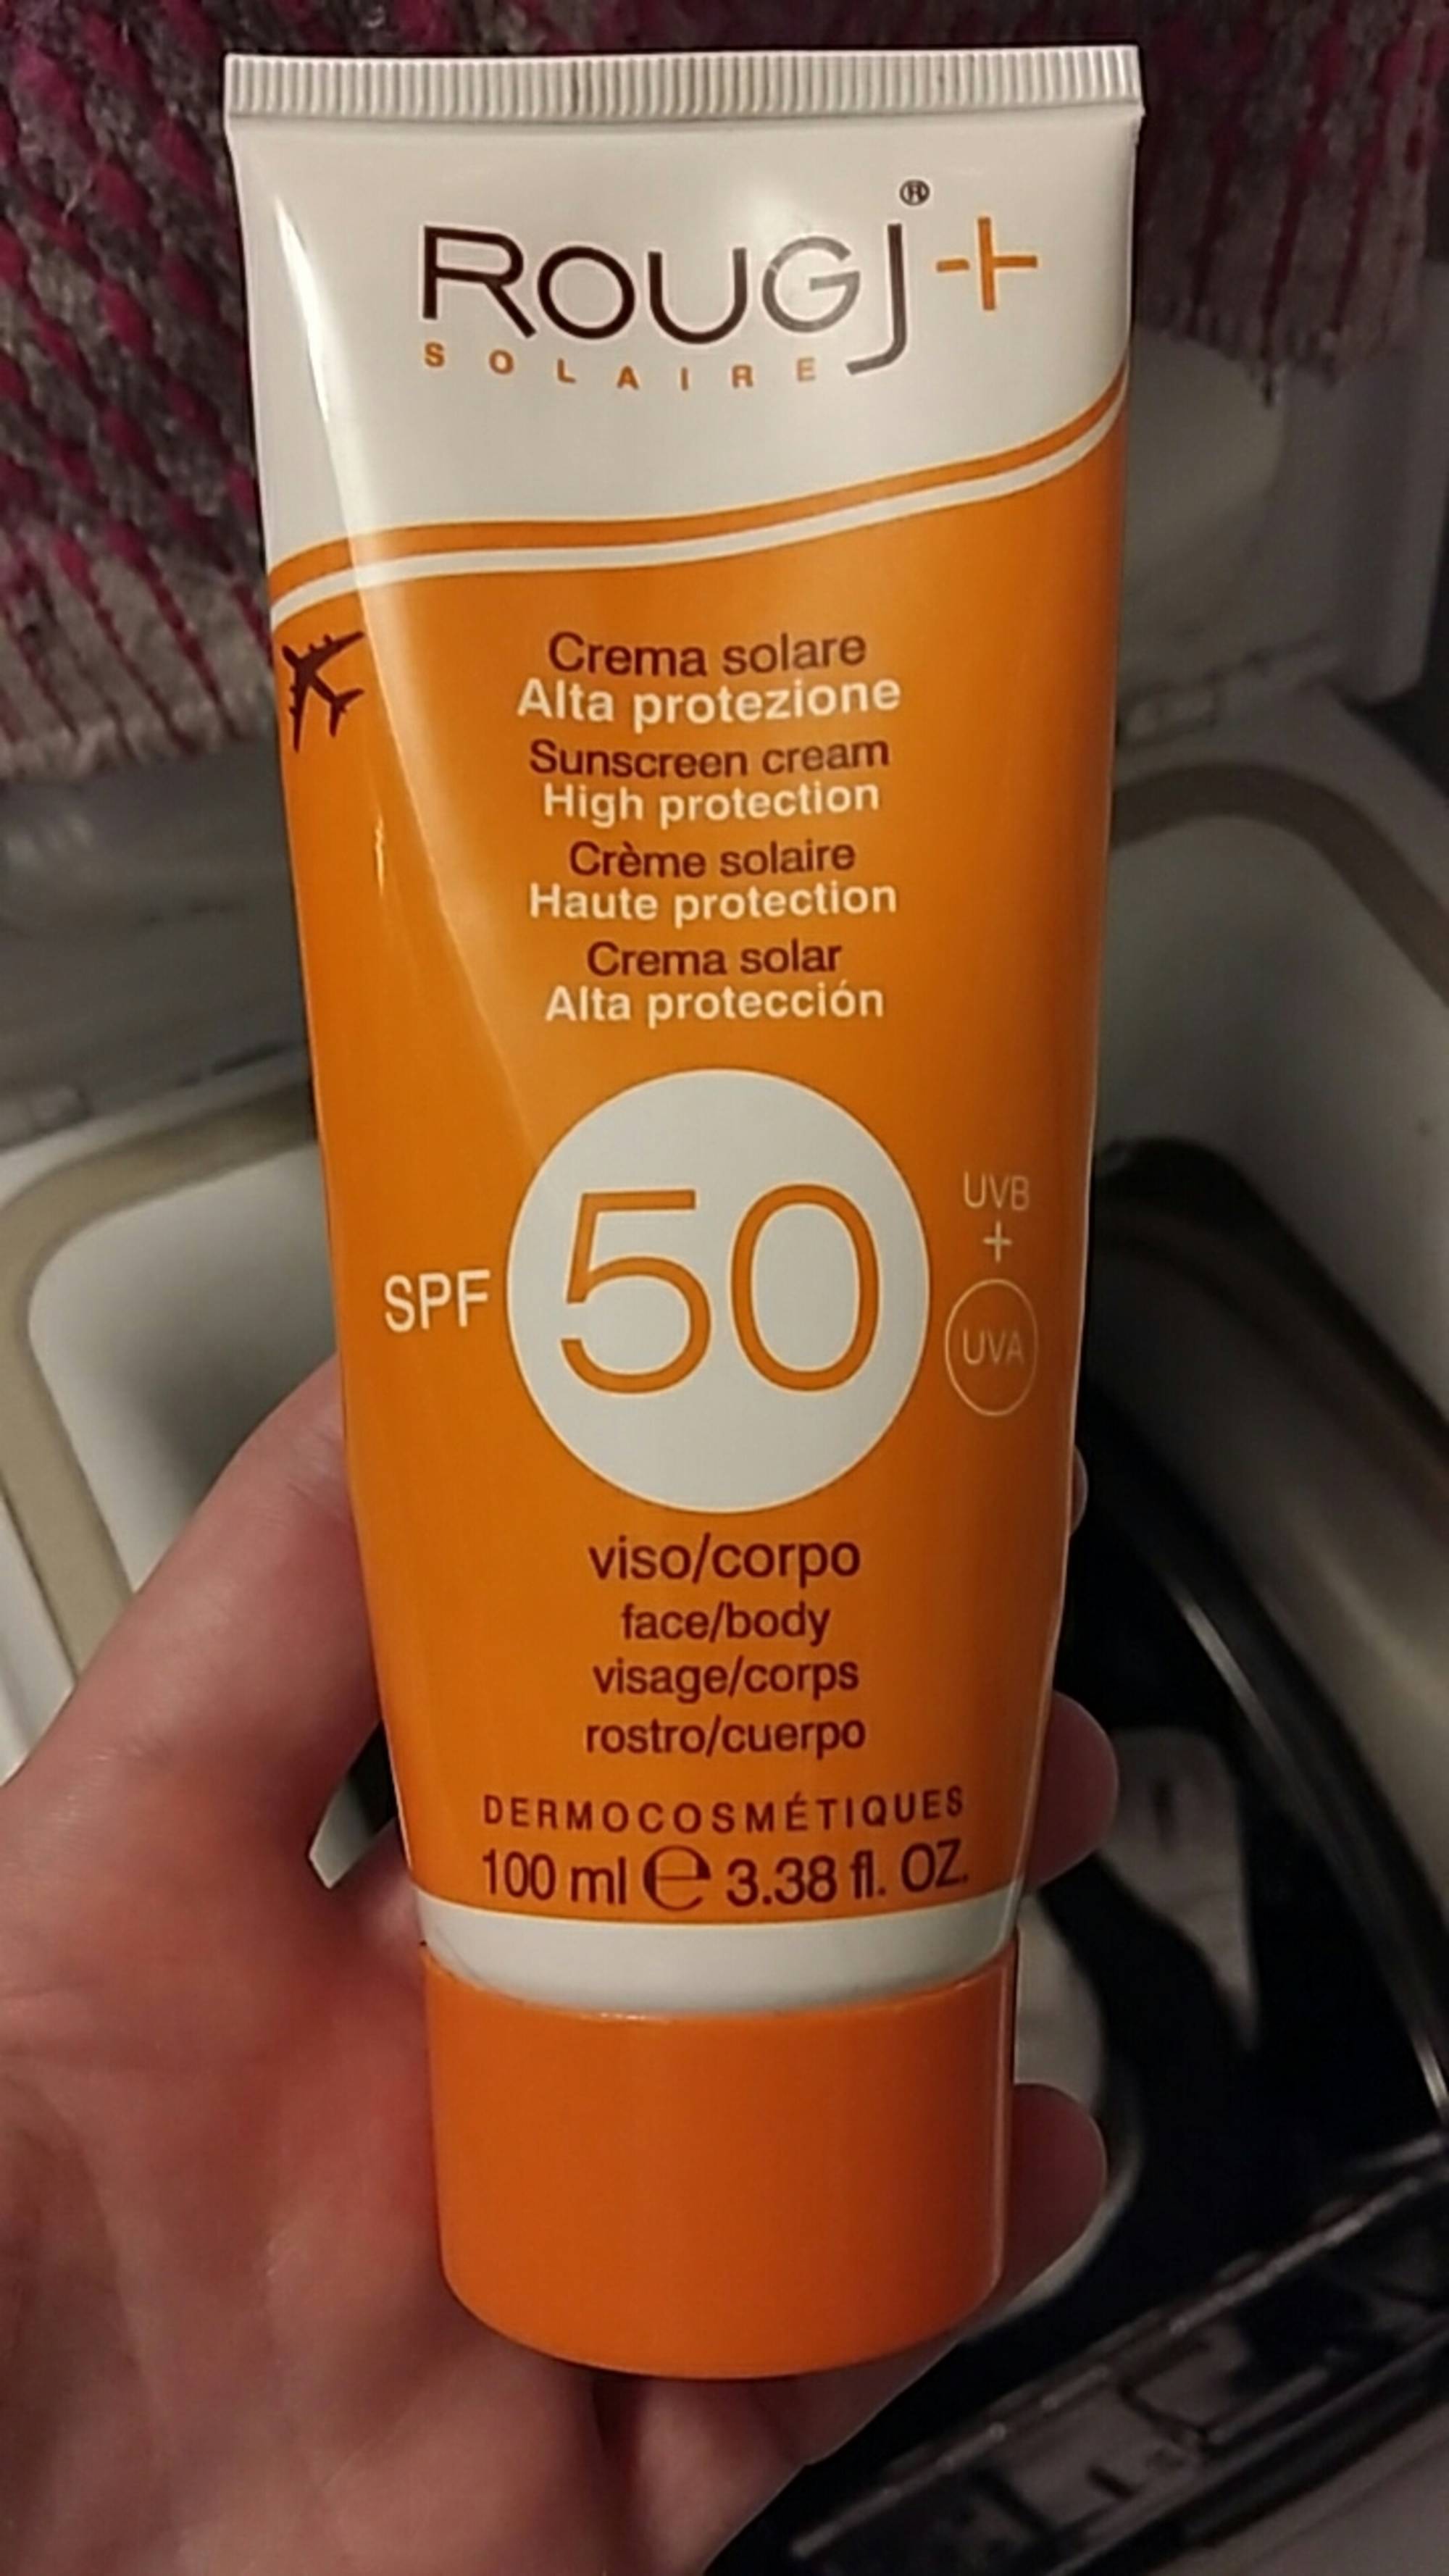 ROUGJ - Crème solaire SPF 50 haute protection